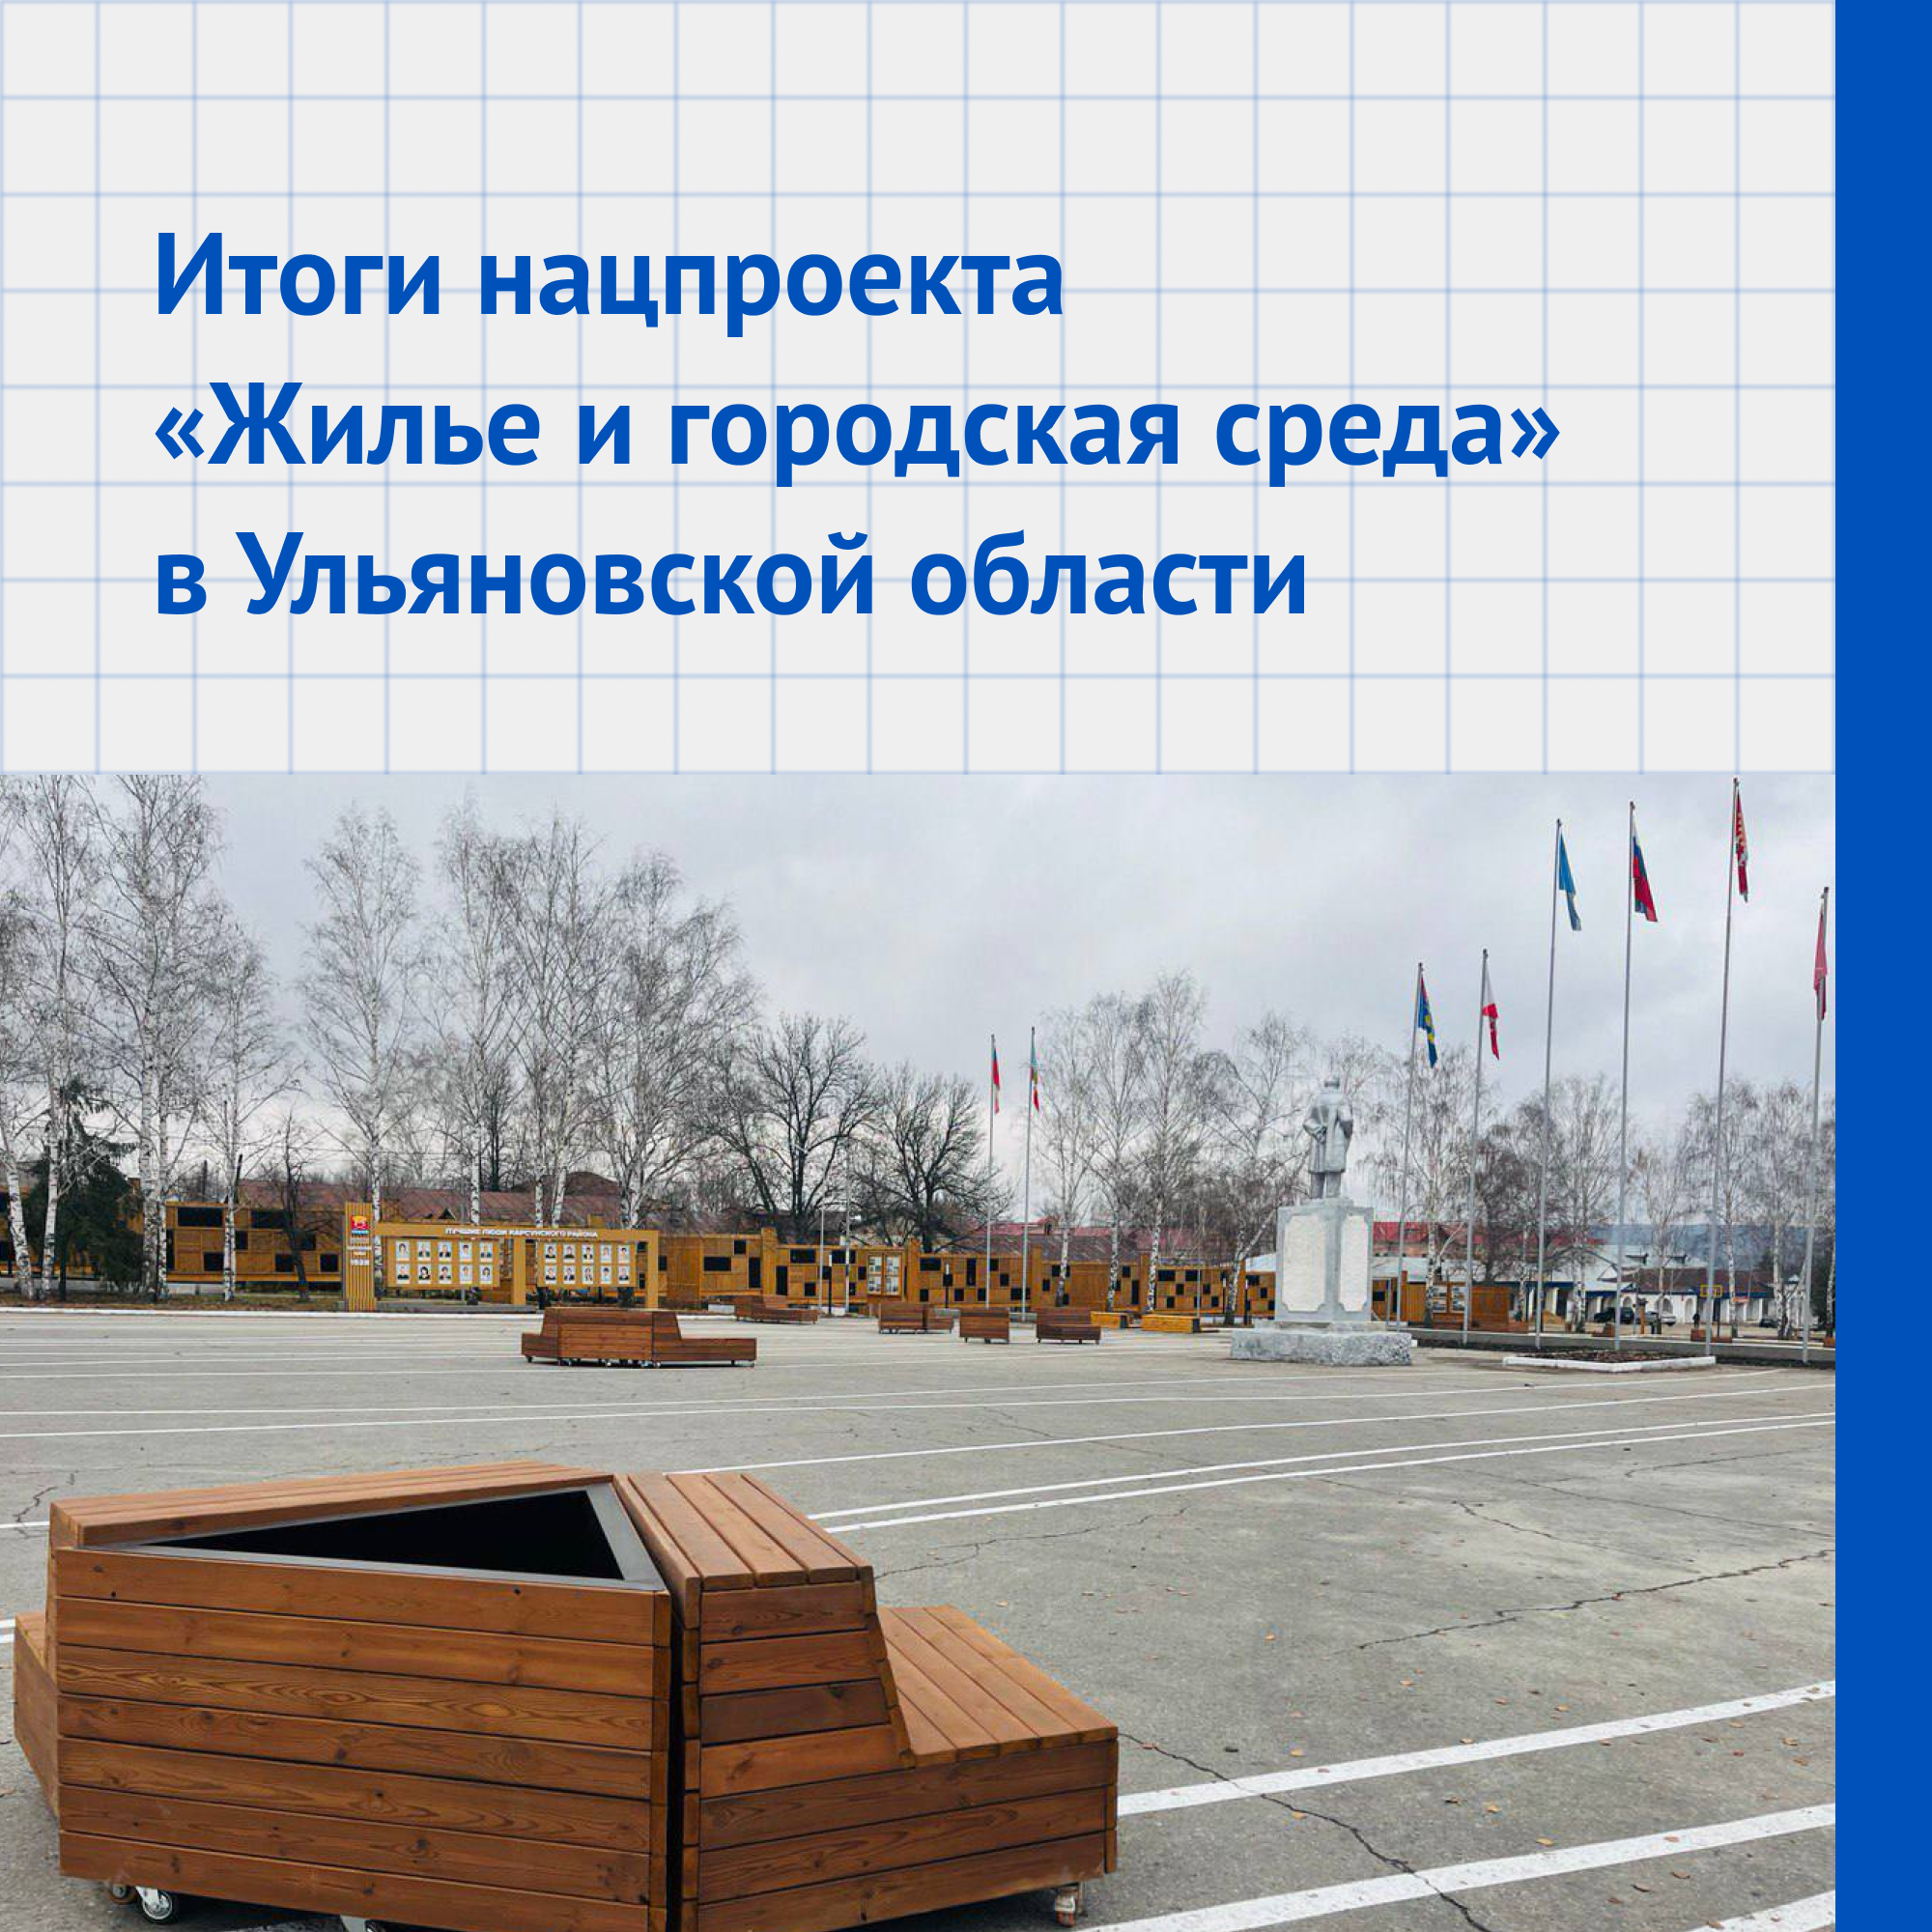 В Ульяновской области реализуют нацпроект «Жилье и городская среда».